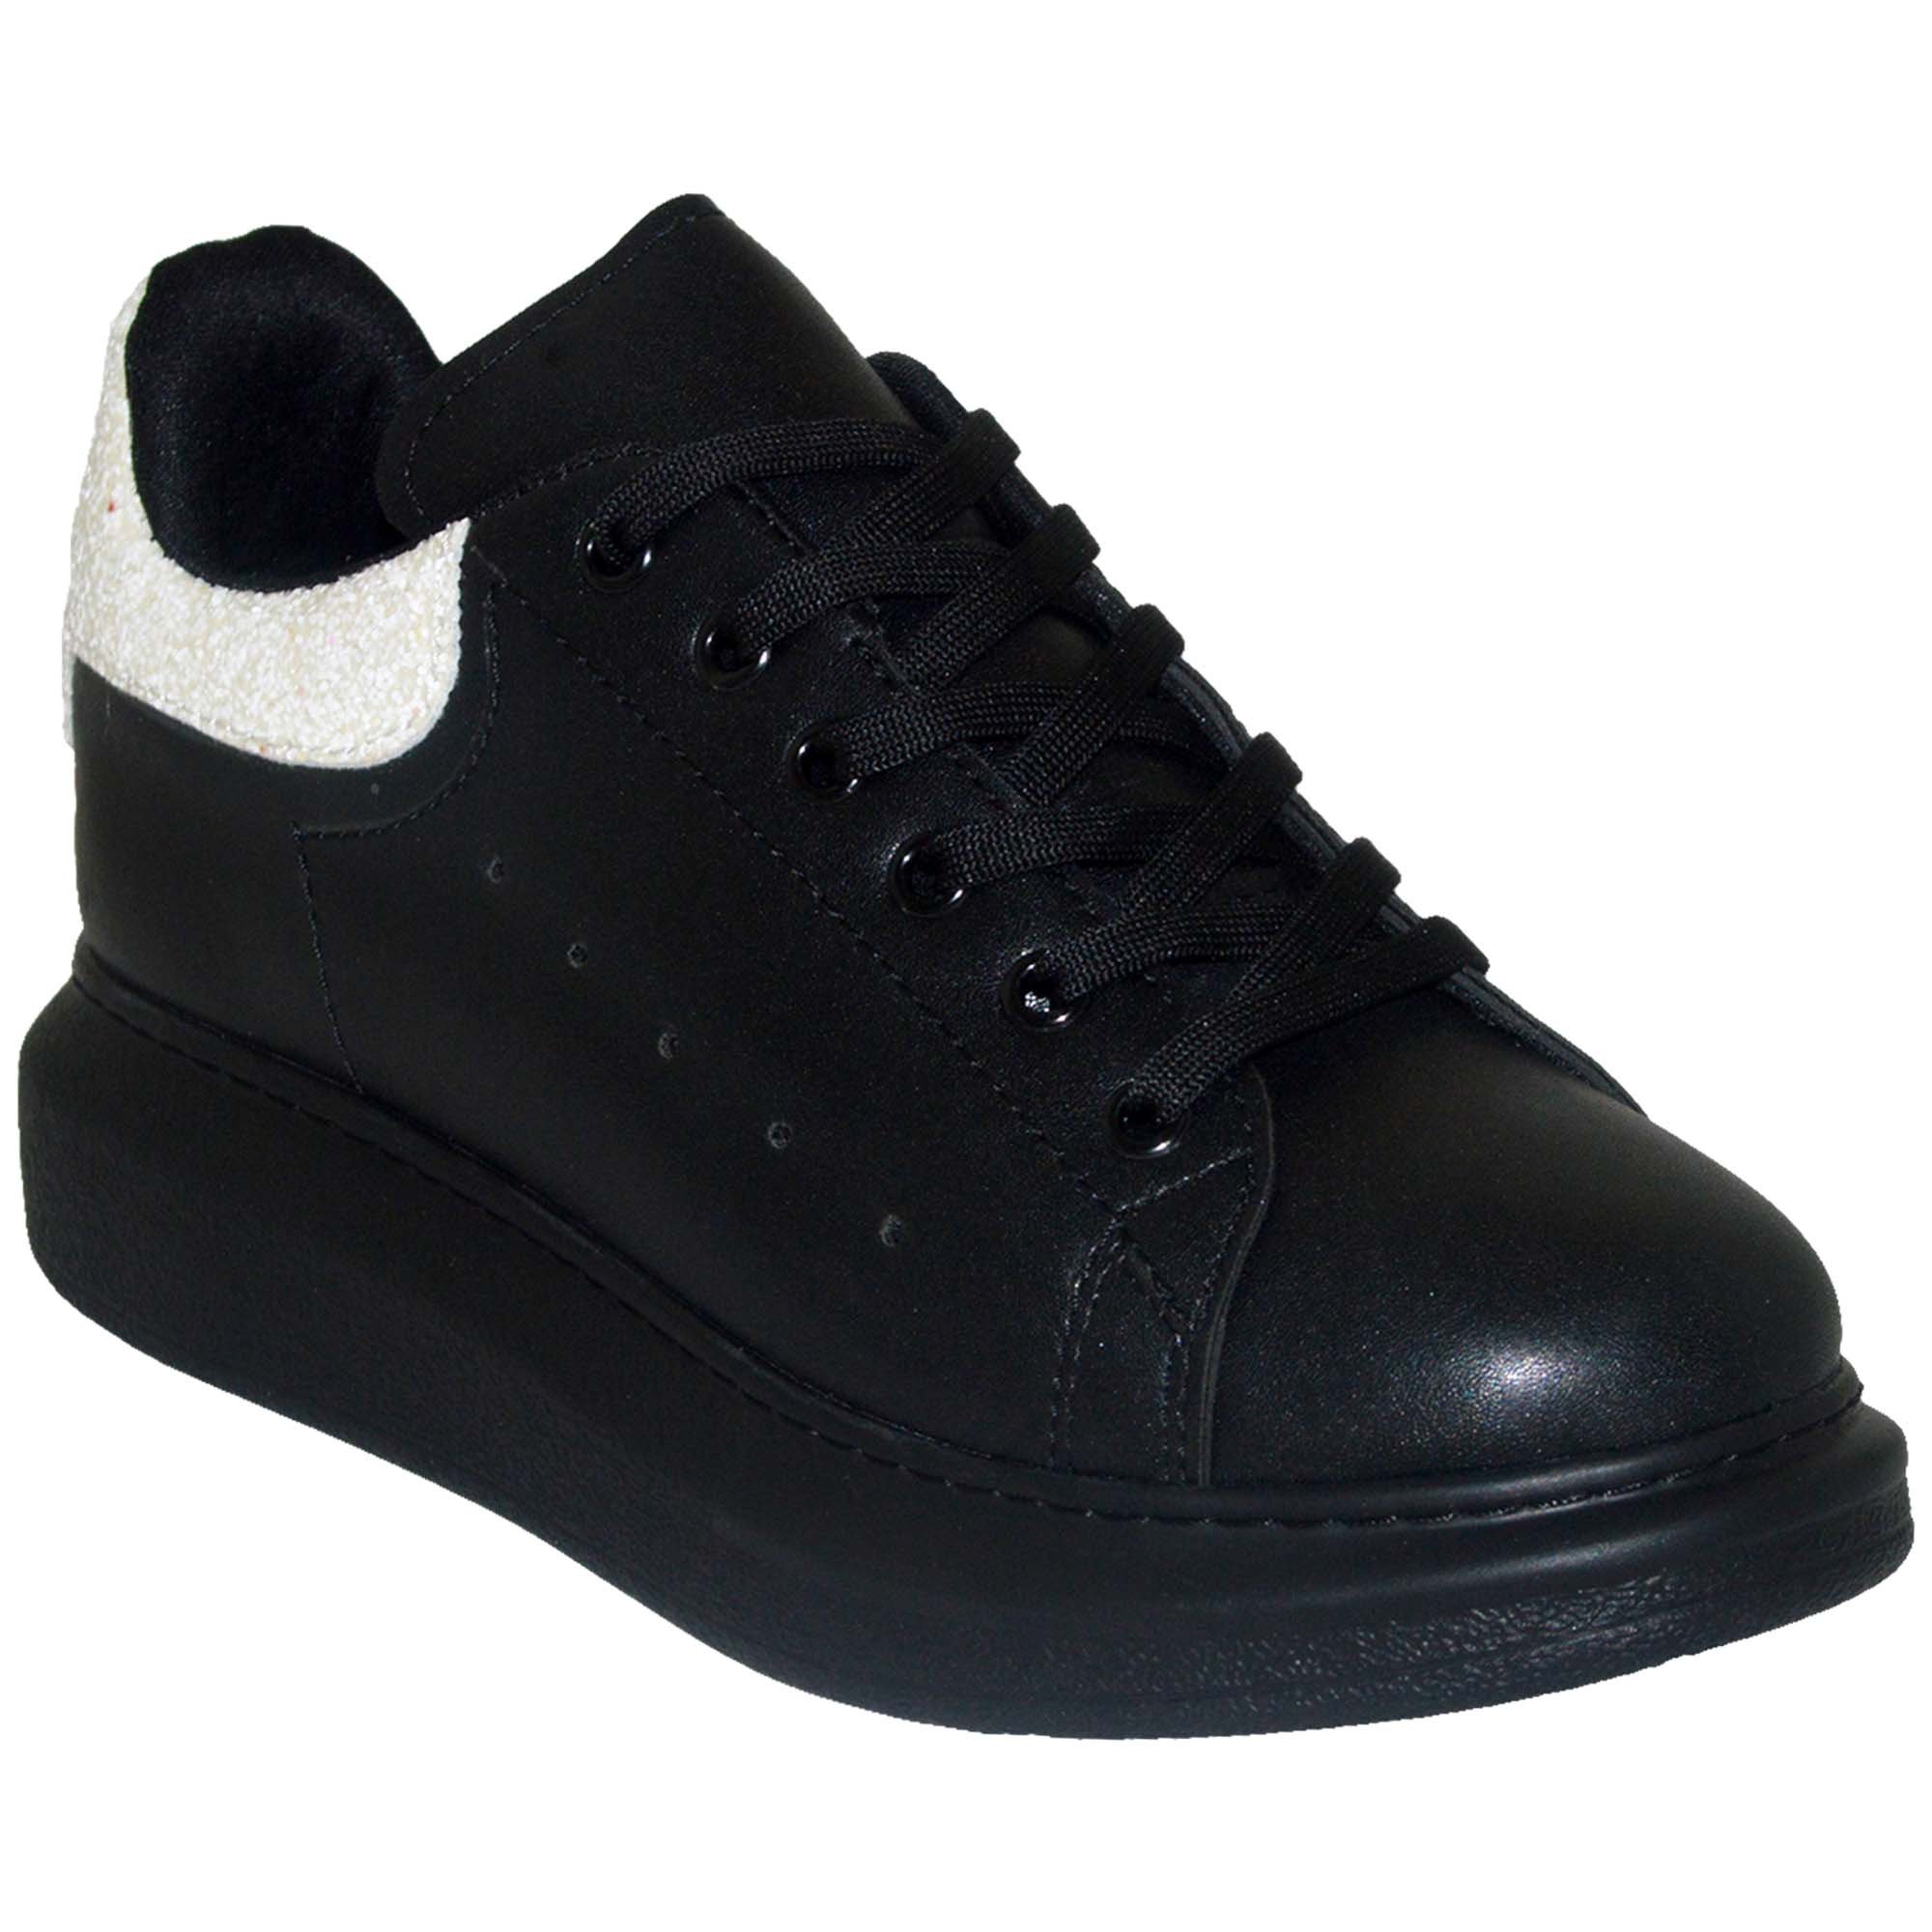 Spor Model Kadın Ayakkabı - Siyah/Beyaz Taşlı